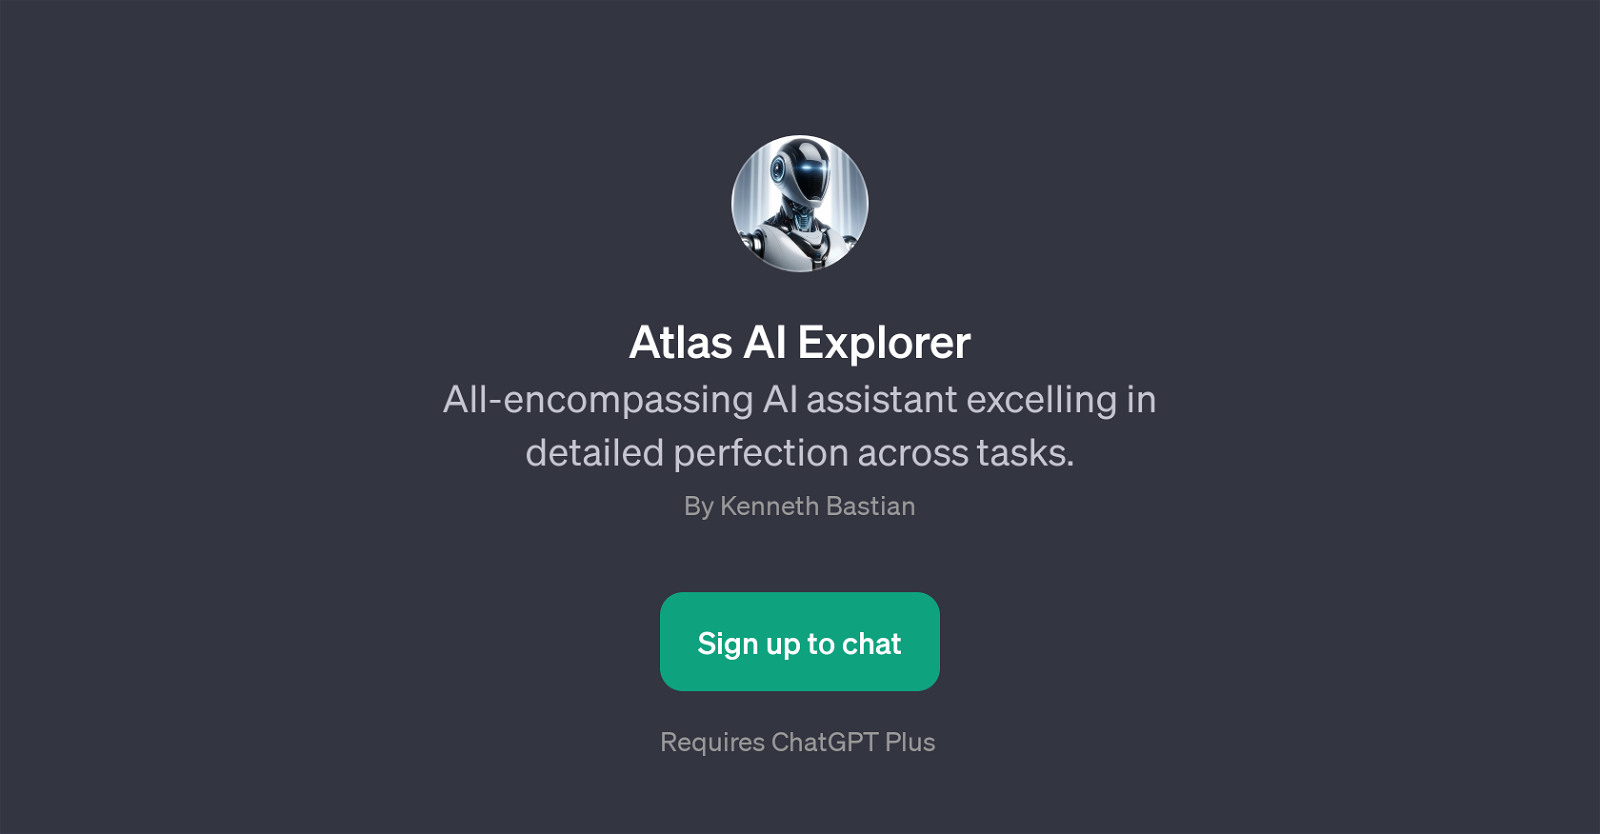 Atlas AI Explorer website